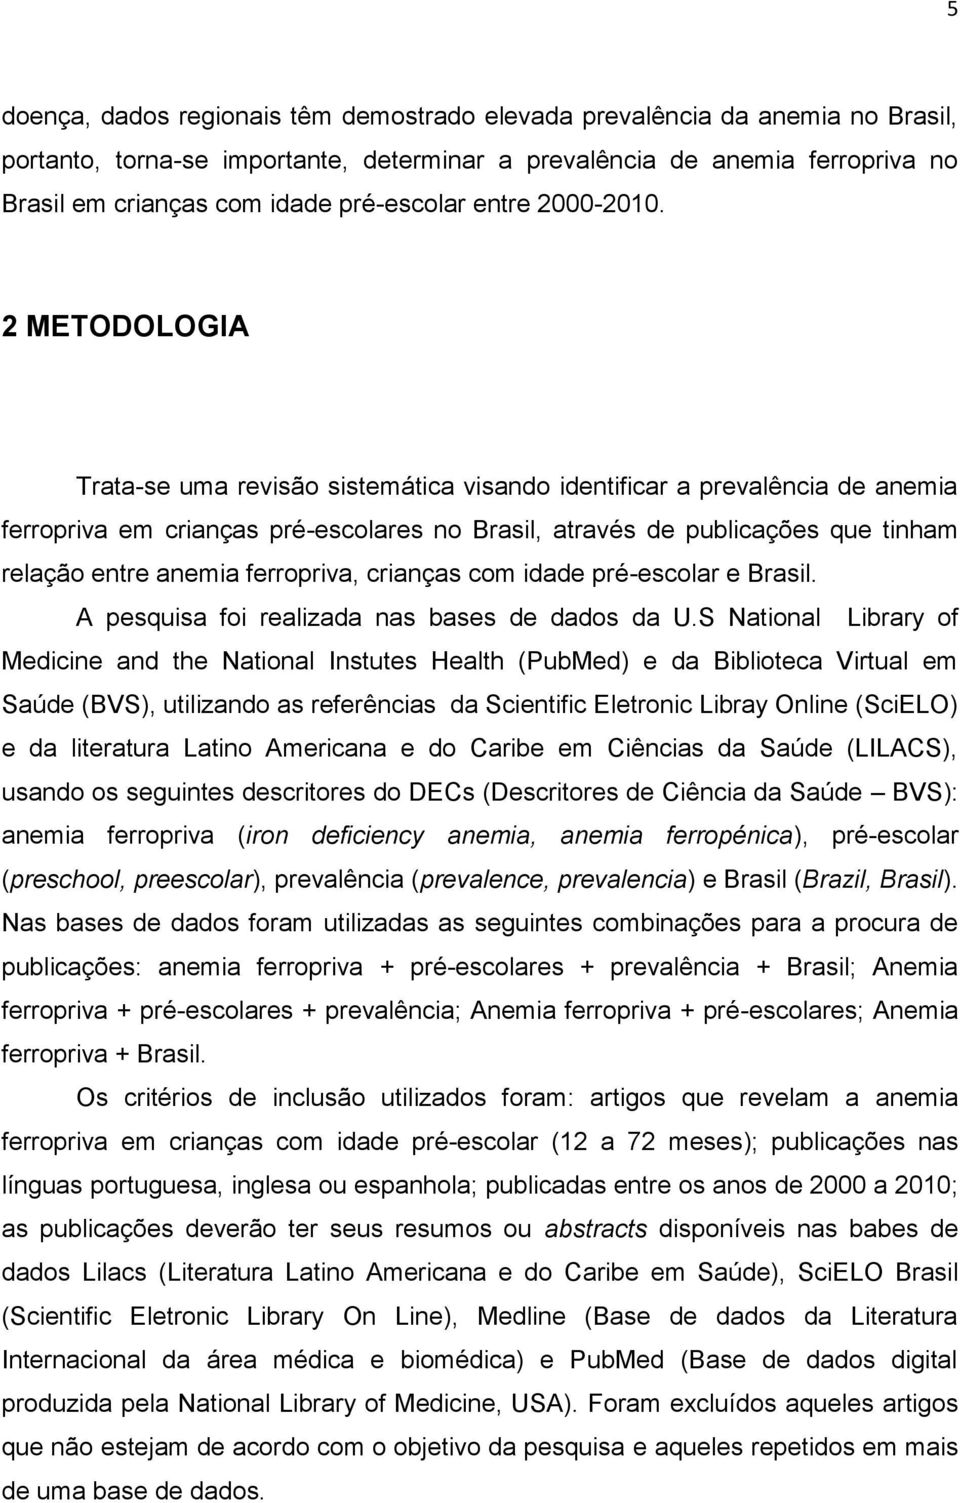 2 METODOLOGIA Trata-se uma revisão sistemática visando identificar a prevalência de anemia ferropriva em crianças pré-escolares no Brasil, através de publicações que tinham relação entre anemia